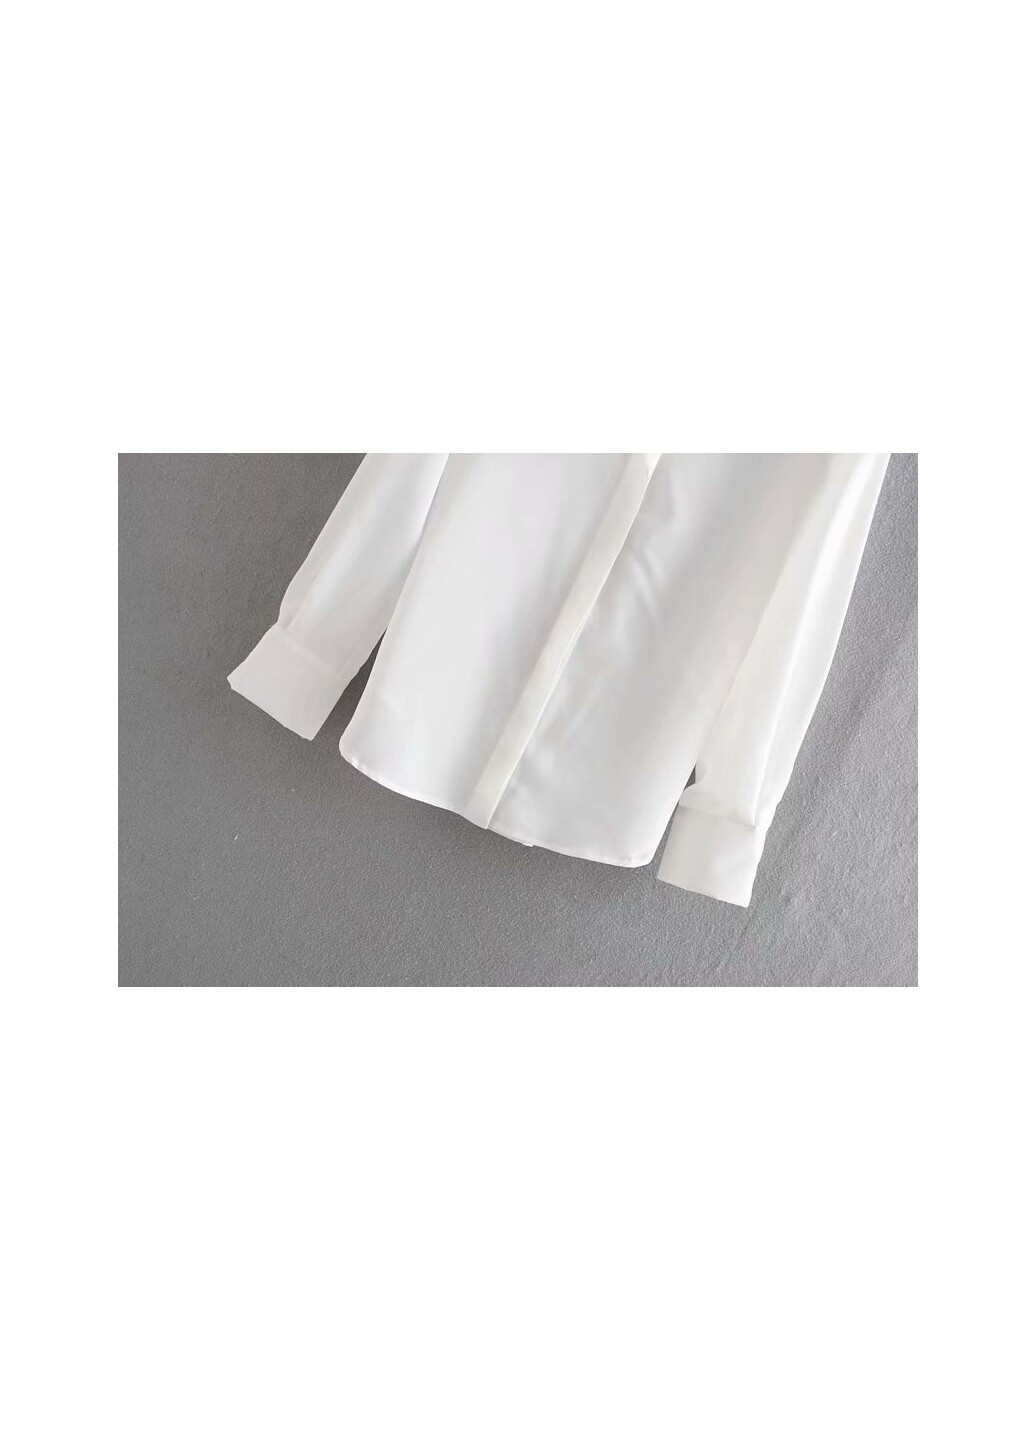 Белая демисезонная блуза женская со скрытыми пуговицами light Berni Fashion 58635